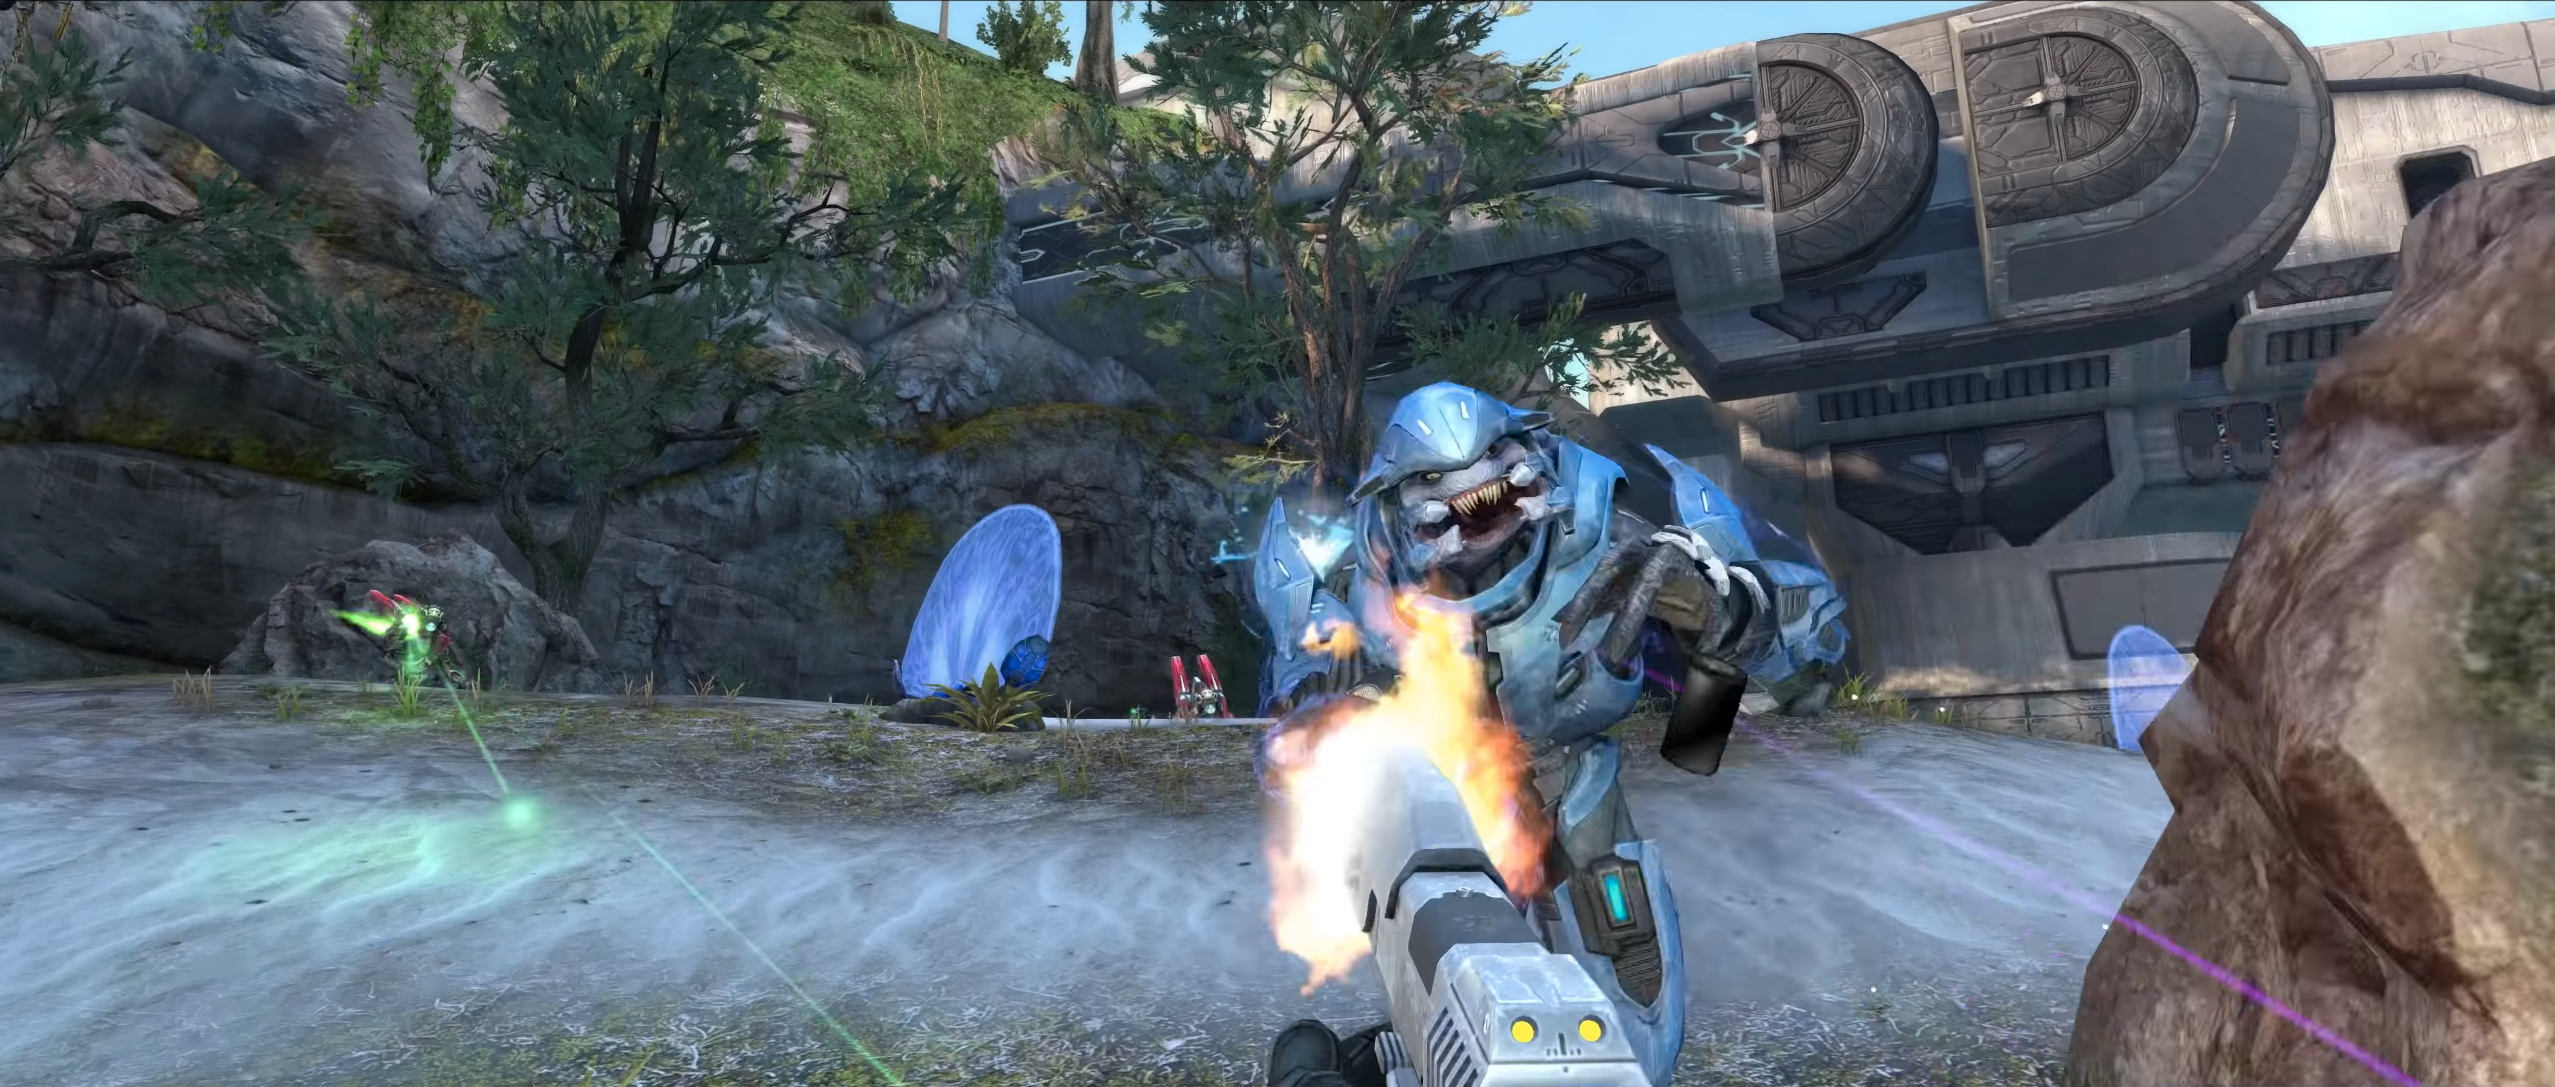 Slik ser Halo ut i oppdatert drakt, mer enn 18 år etter at originalen landet på Xbox.